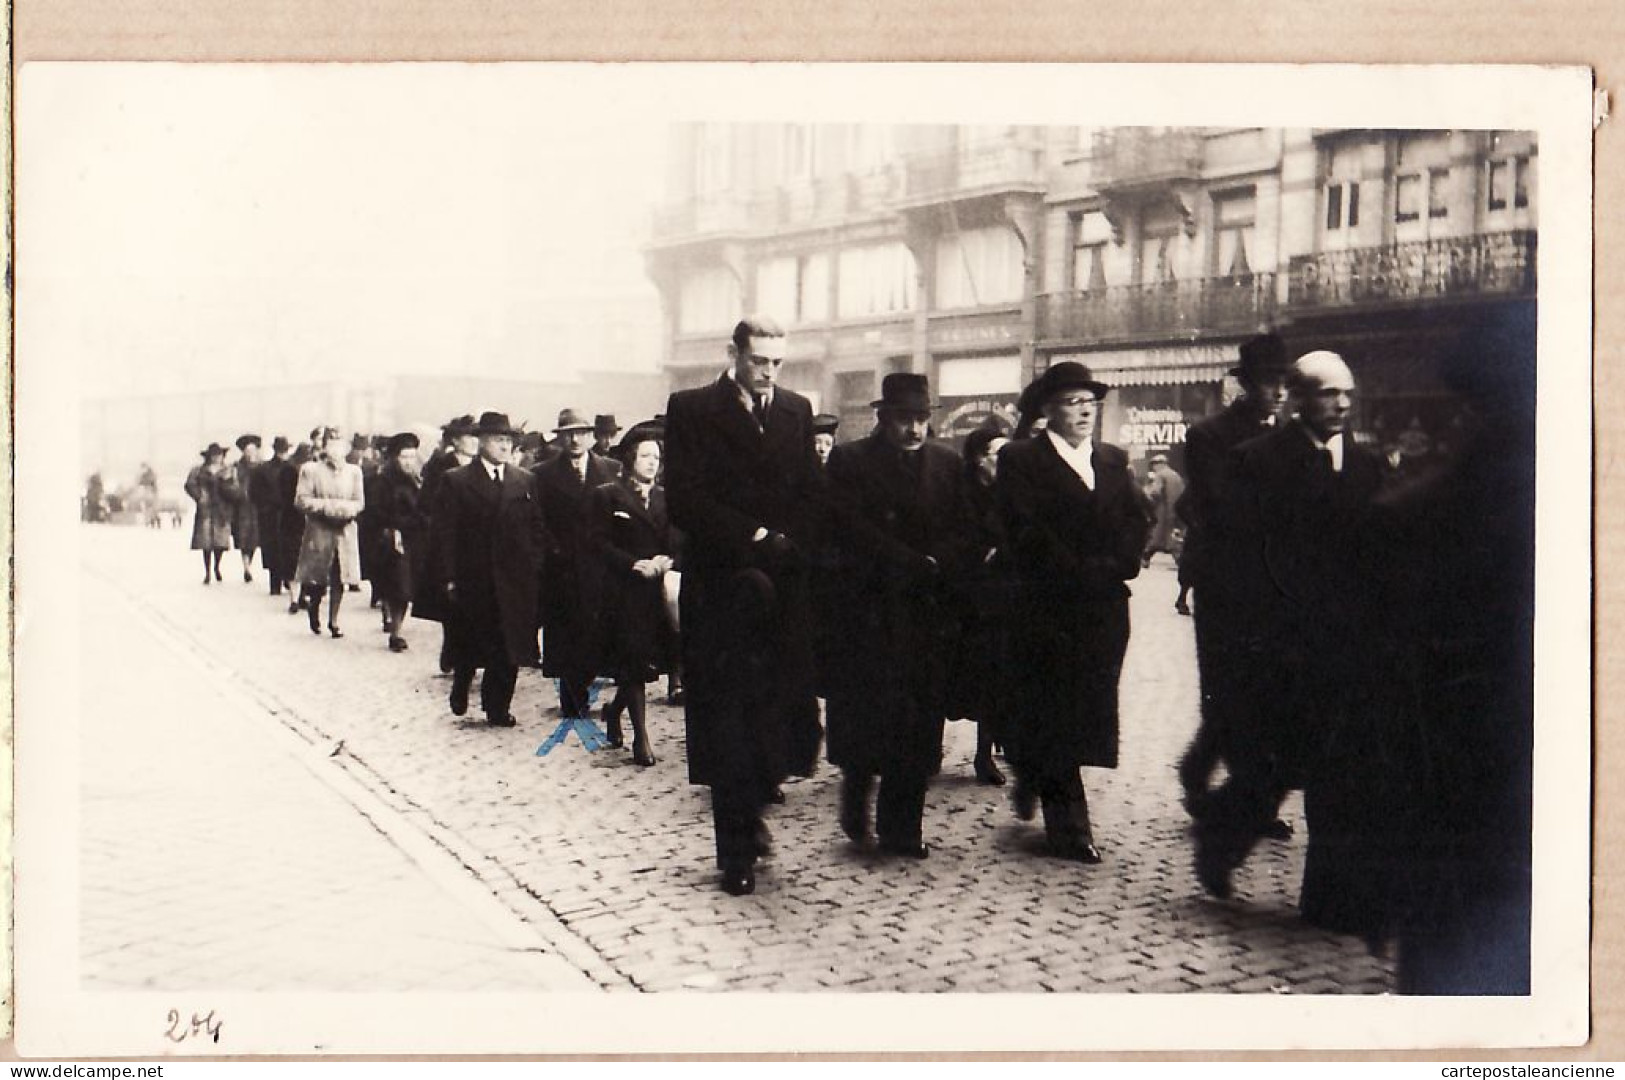 17993 / ⭐ ◉ BRUXELLES Brussel 13.12.1943 Défilé Funèbre Famille Rue Ville Enterrement Grand Mère CHATTEN  - Feiern, Ereignisse